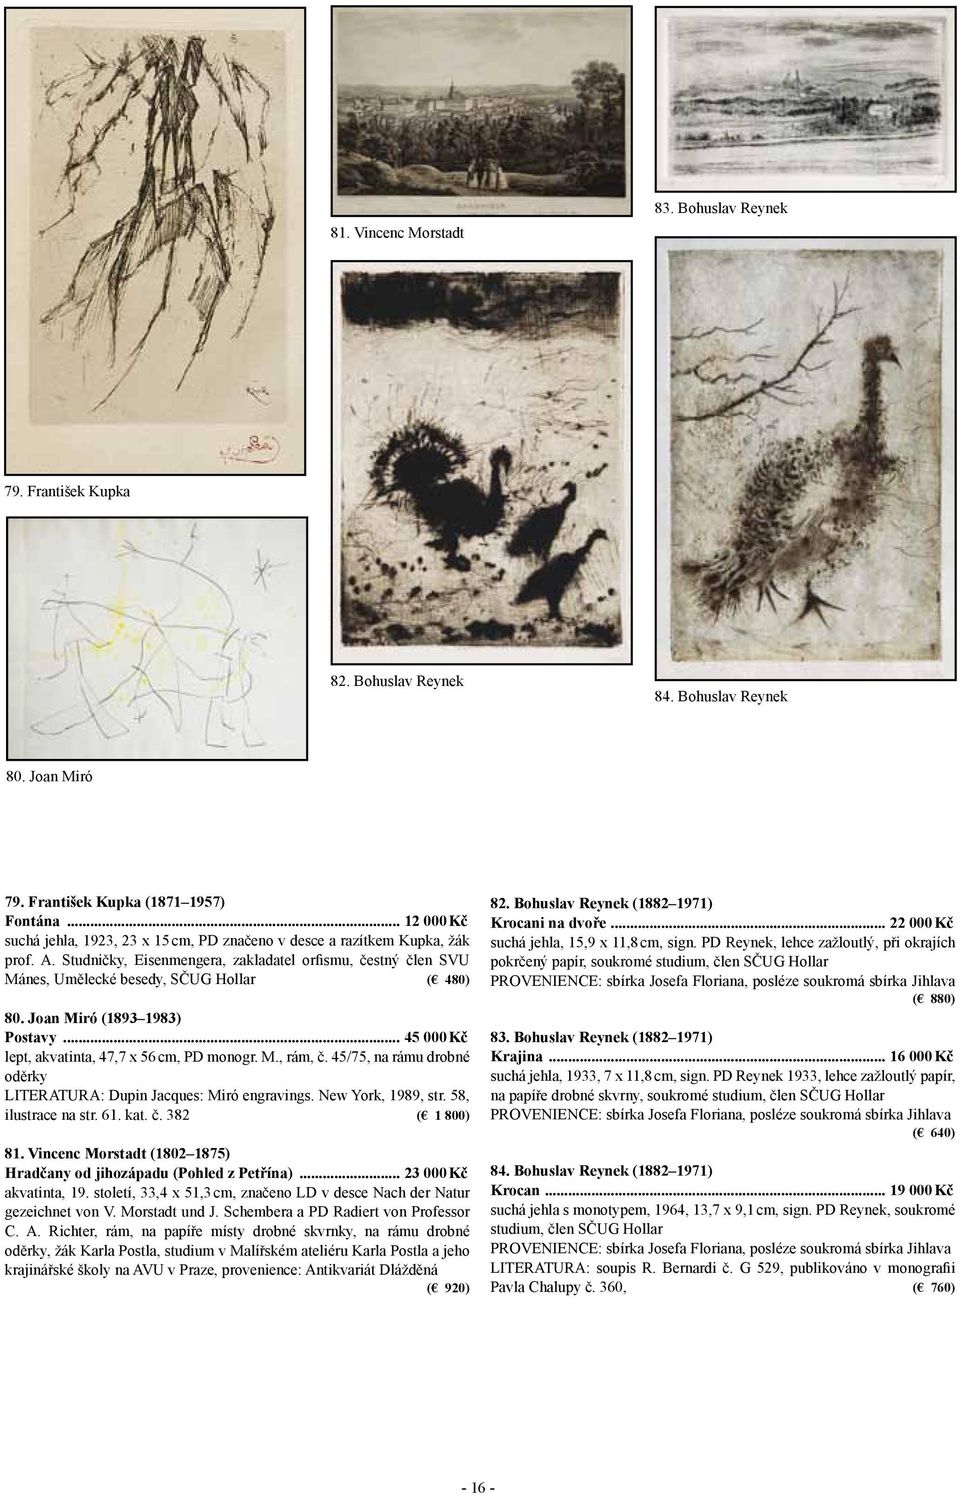 Studničky, Eisenmengera, zakladatel orfismu, čestný člen SVU Mánes, Umělecké besedy, SČUG Hollar ( 480) 80. Joan Miró (1893 1983) Postavy... 45 000 Kč lept, akvatinta, 47,7 x 56 cm, PD monogr. M., rám, č.